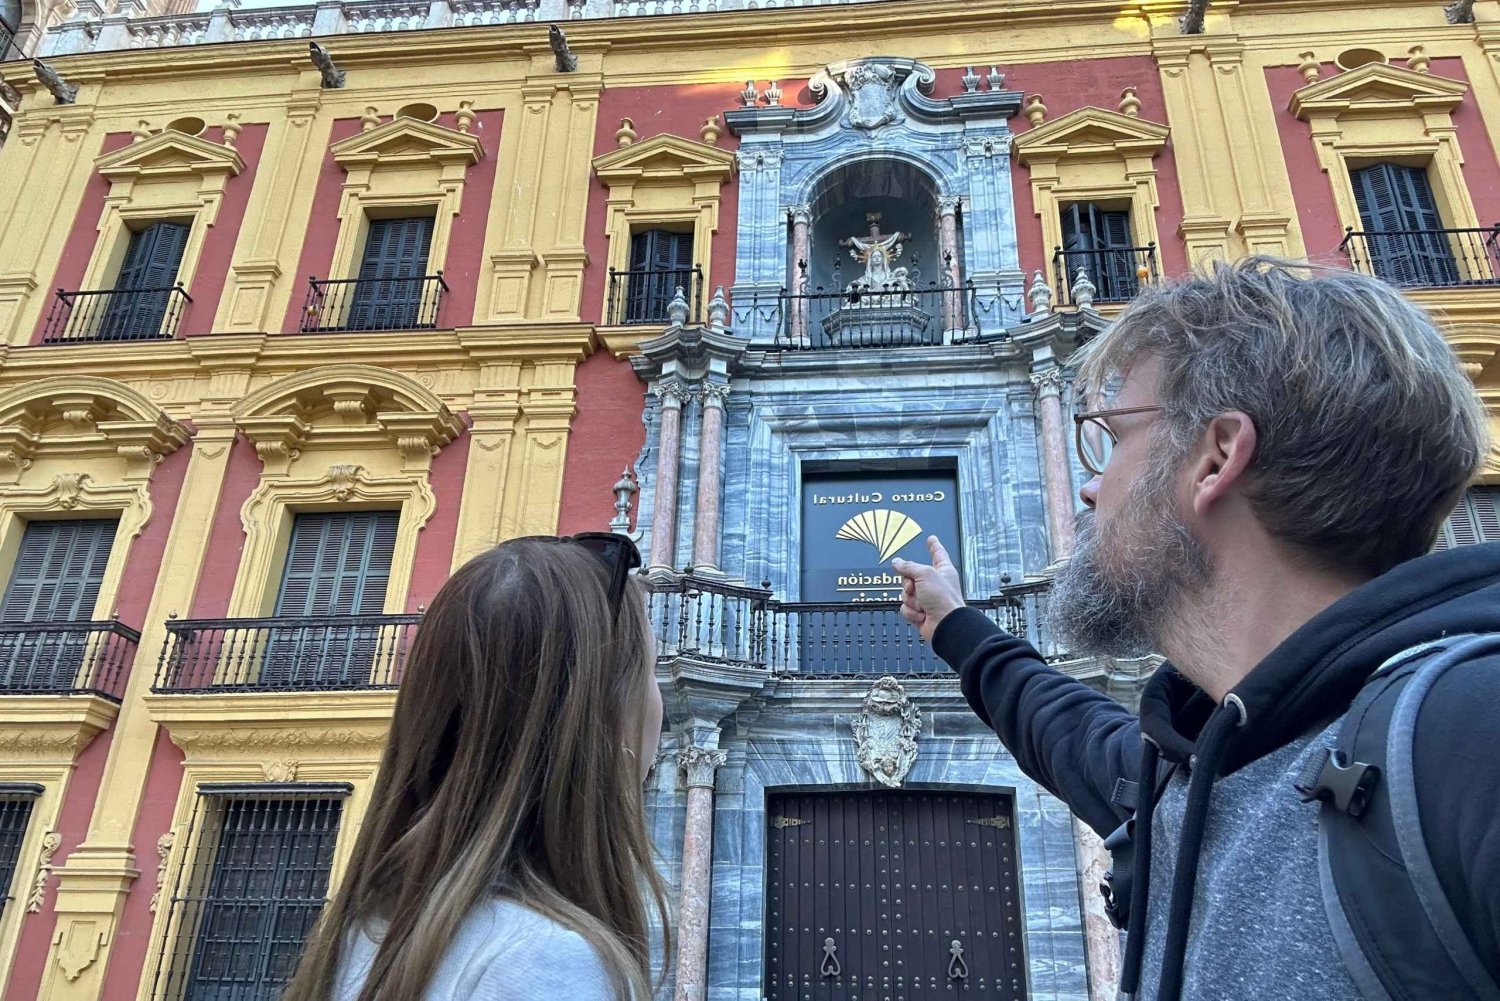 Malaga: Self-Guided Secrets of Malaga Exploration Game